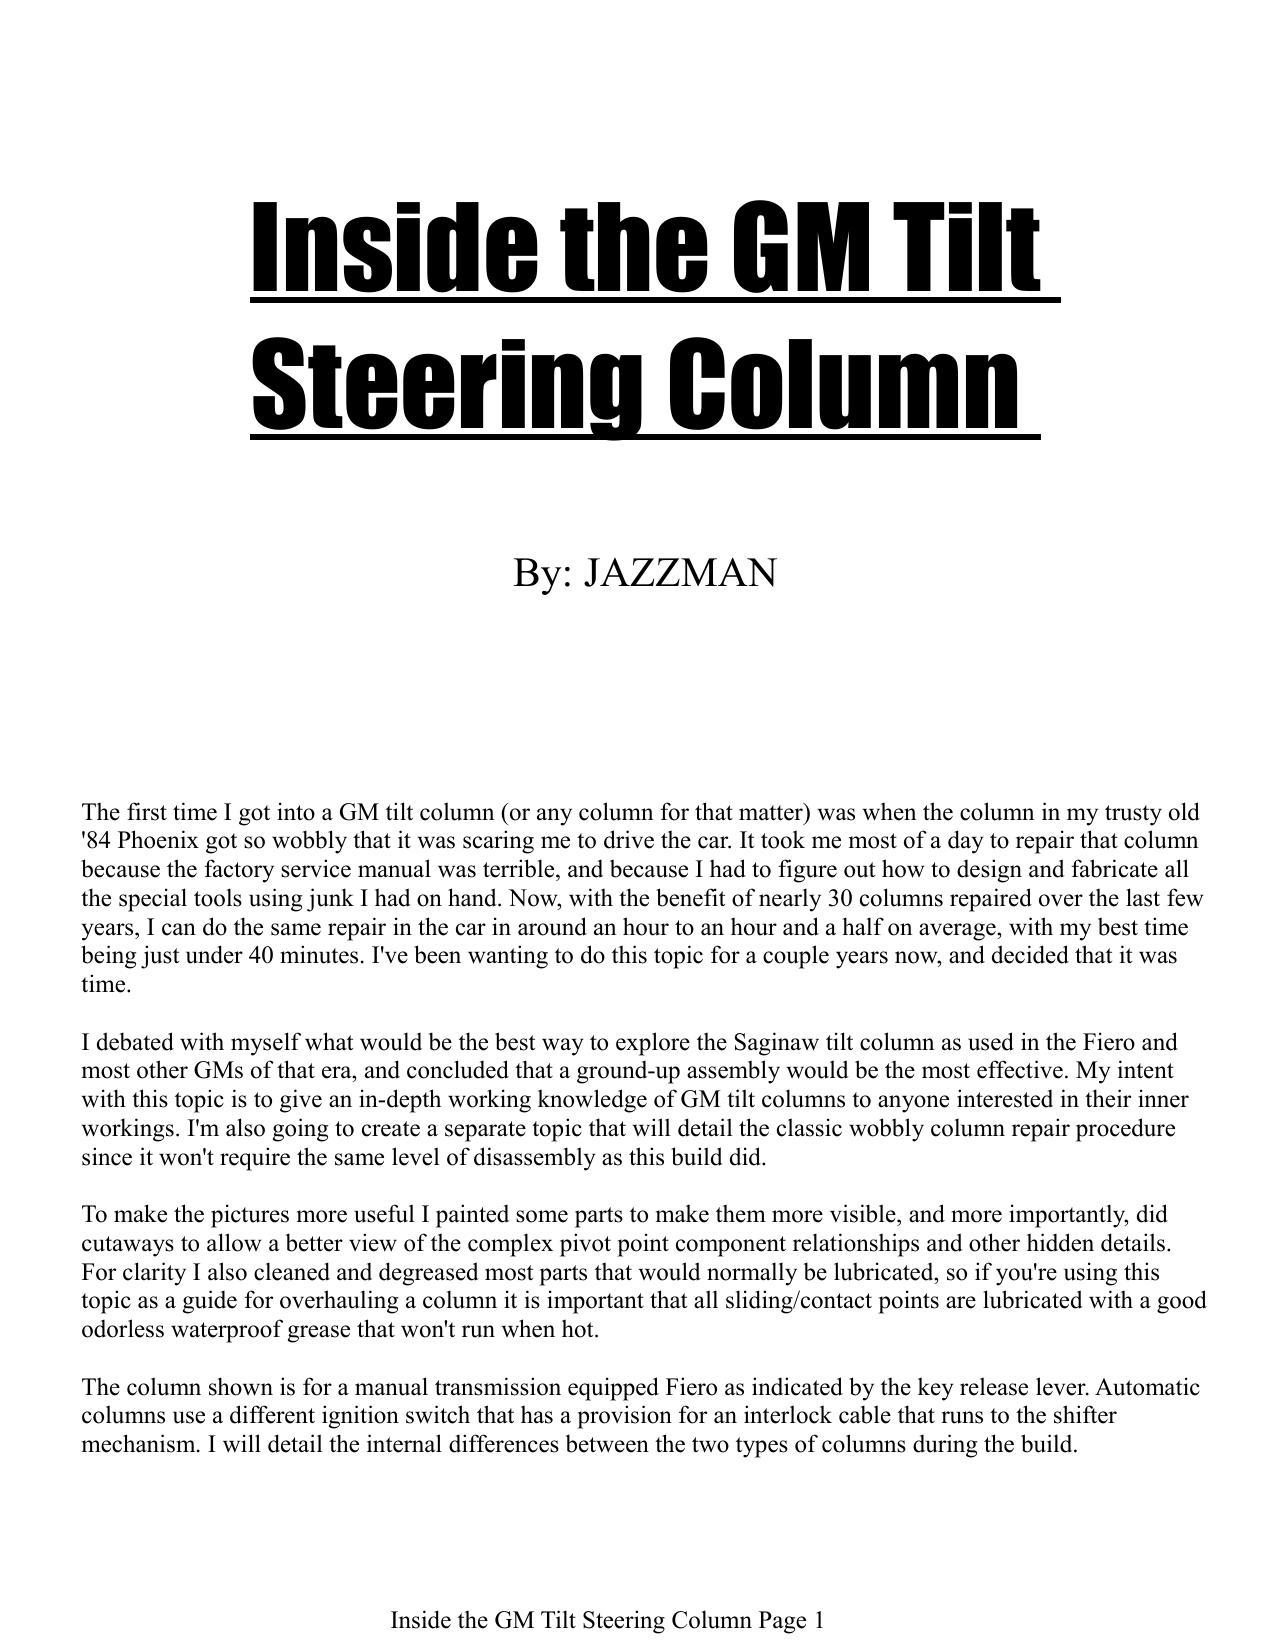 inside-the-gm-tilt-steering-column.pdf